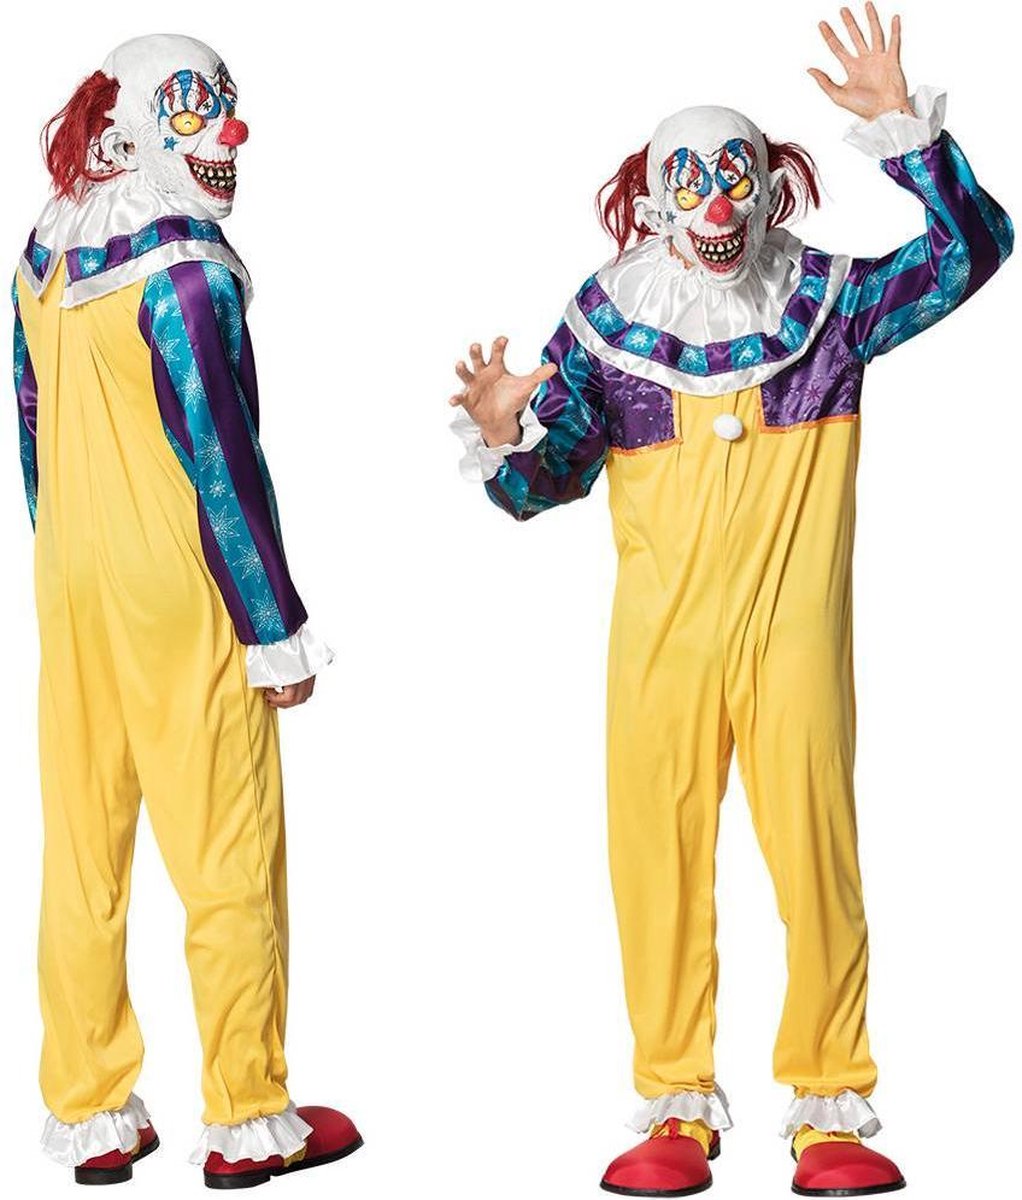 Boland - Volwassenenkostuum Creepy clown - Multi - M/L - Volwassenen - Clown